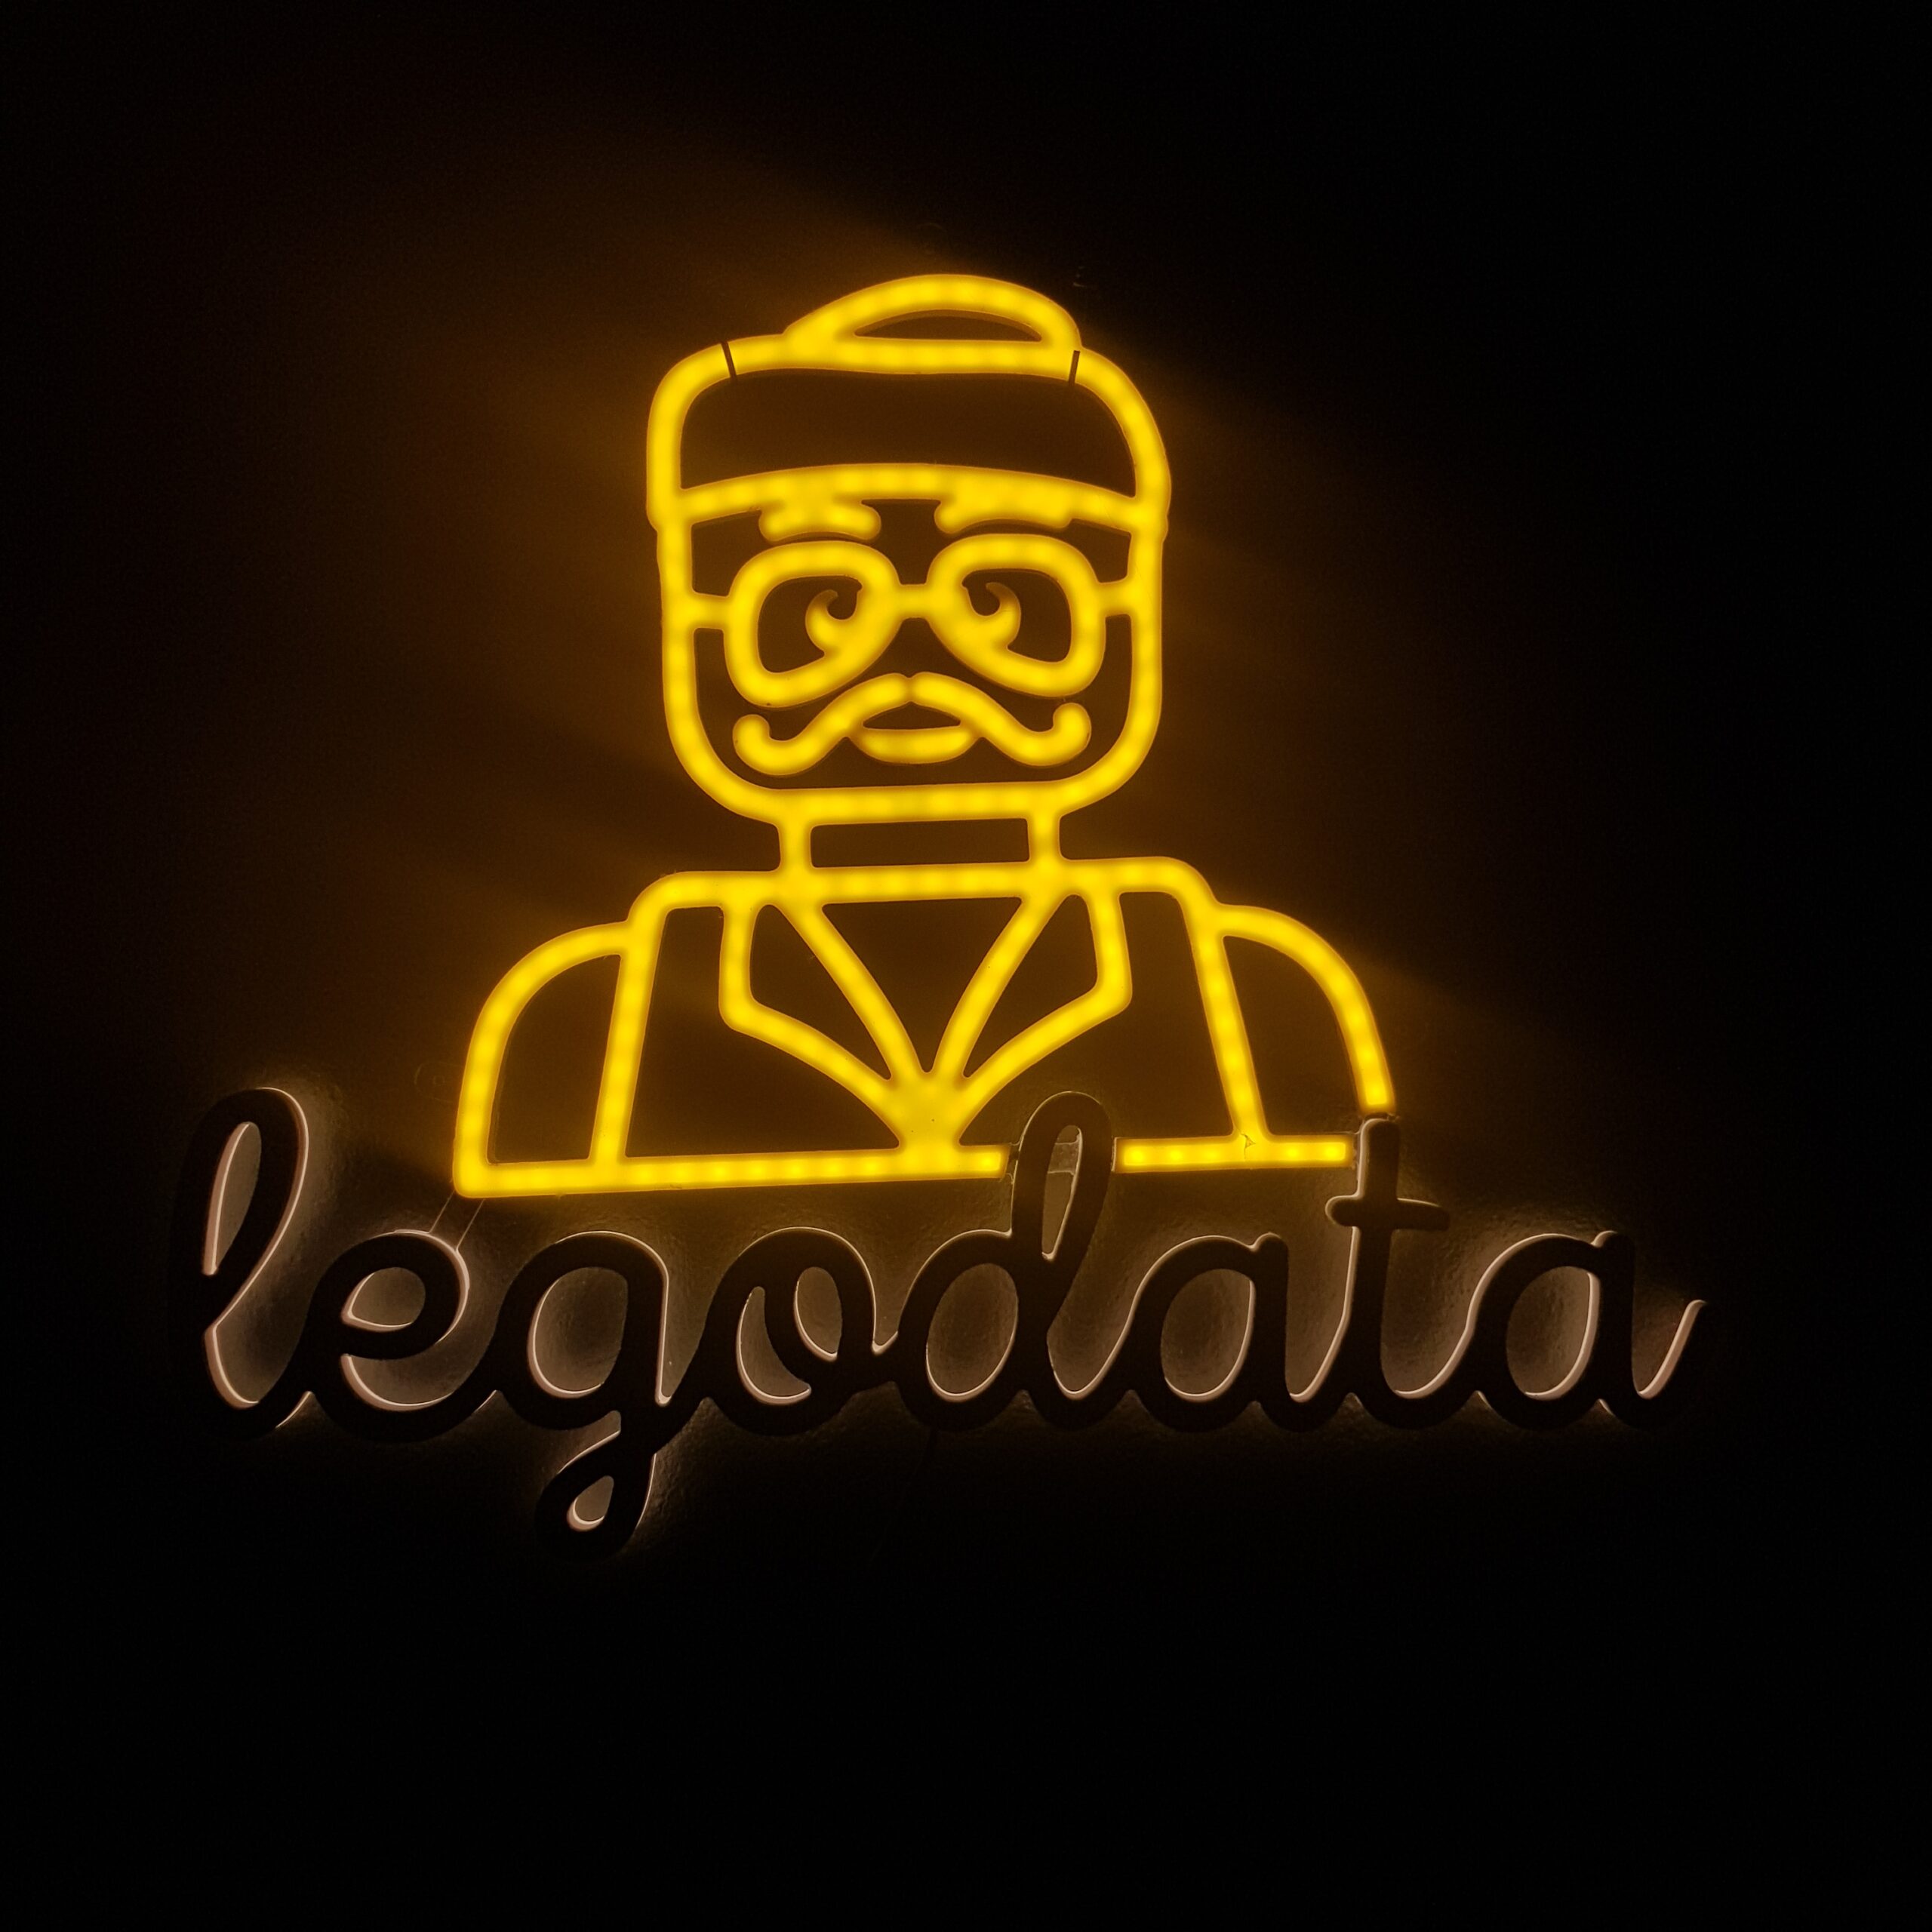 Świetlne logo LegoData czyli neon na ścianę inspirowany klockami LEGO